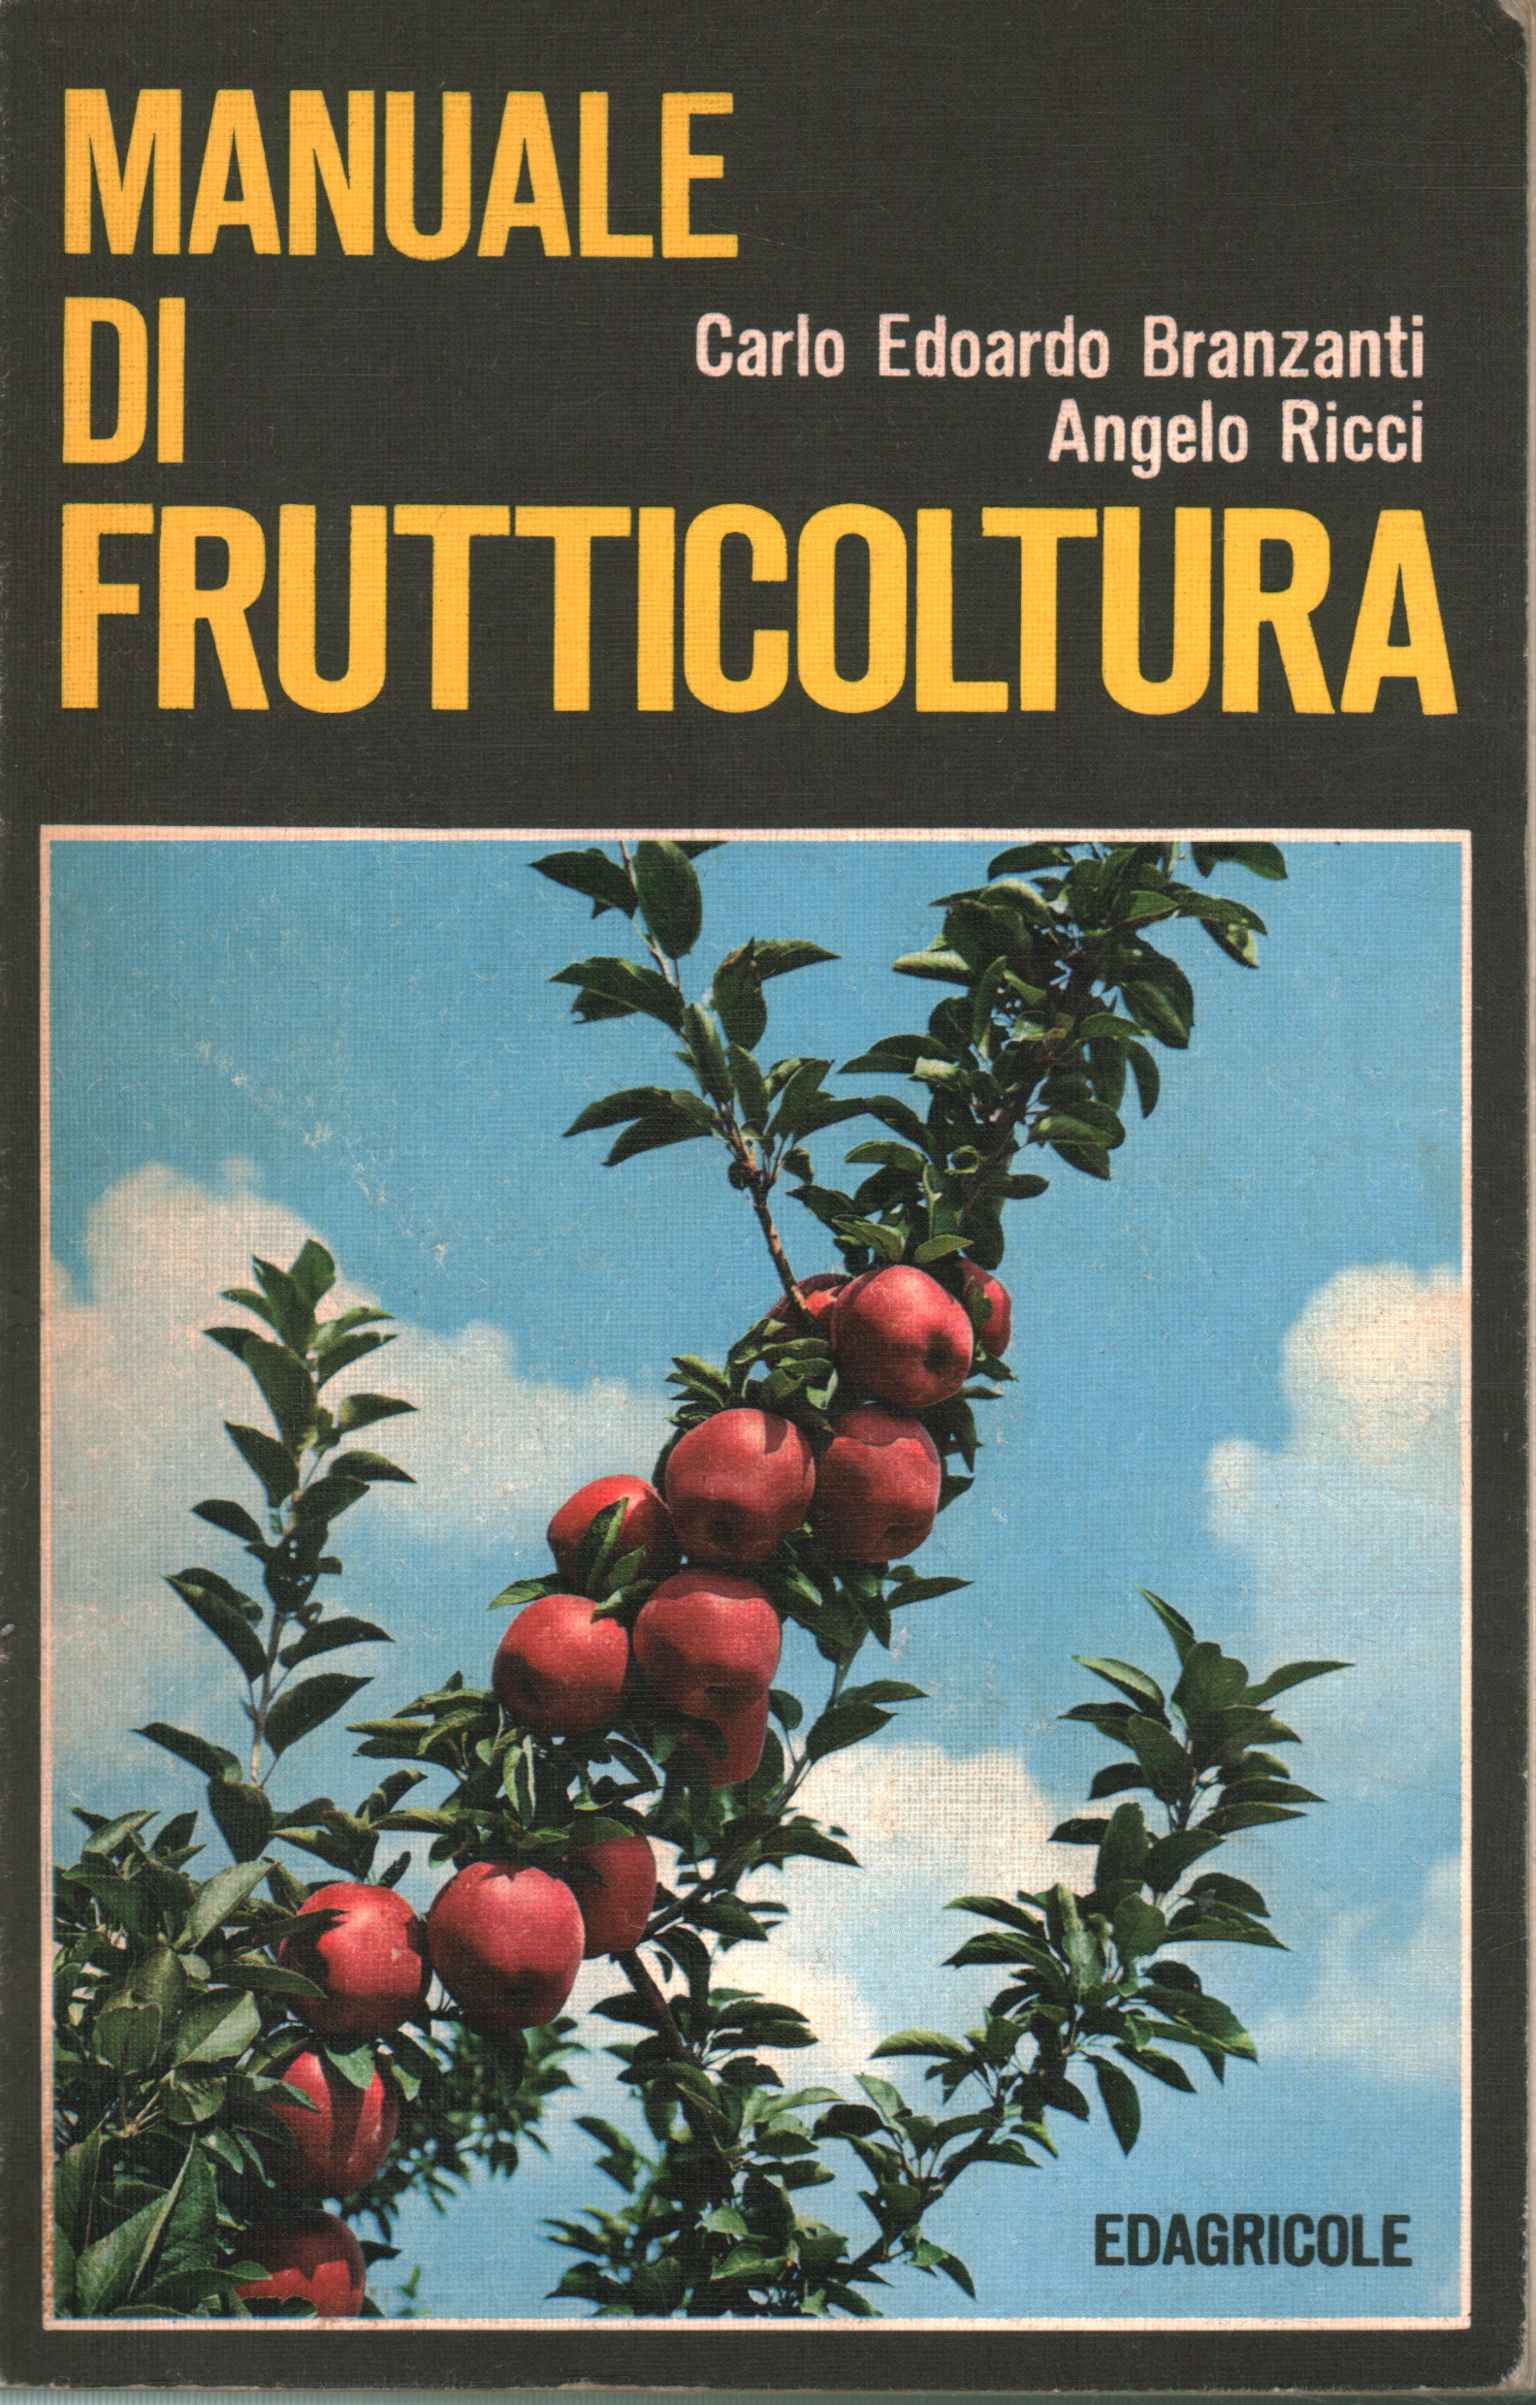 Fruit growing manual